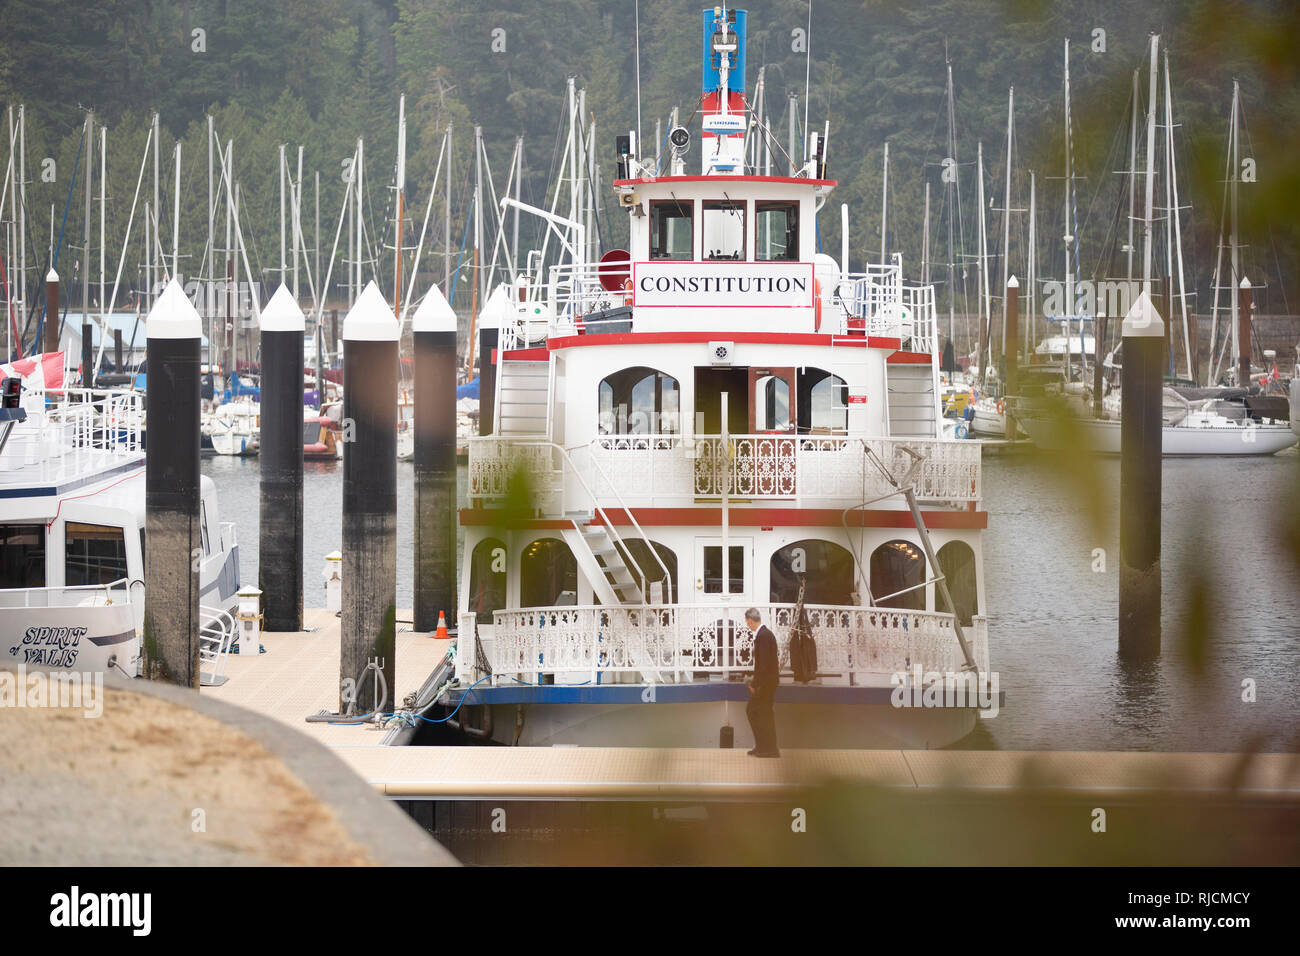 Kanada, British Columbia, Vancouver, Ausflugsschiff 'Costituzione' im Hafen Foto Stock